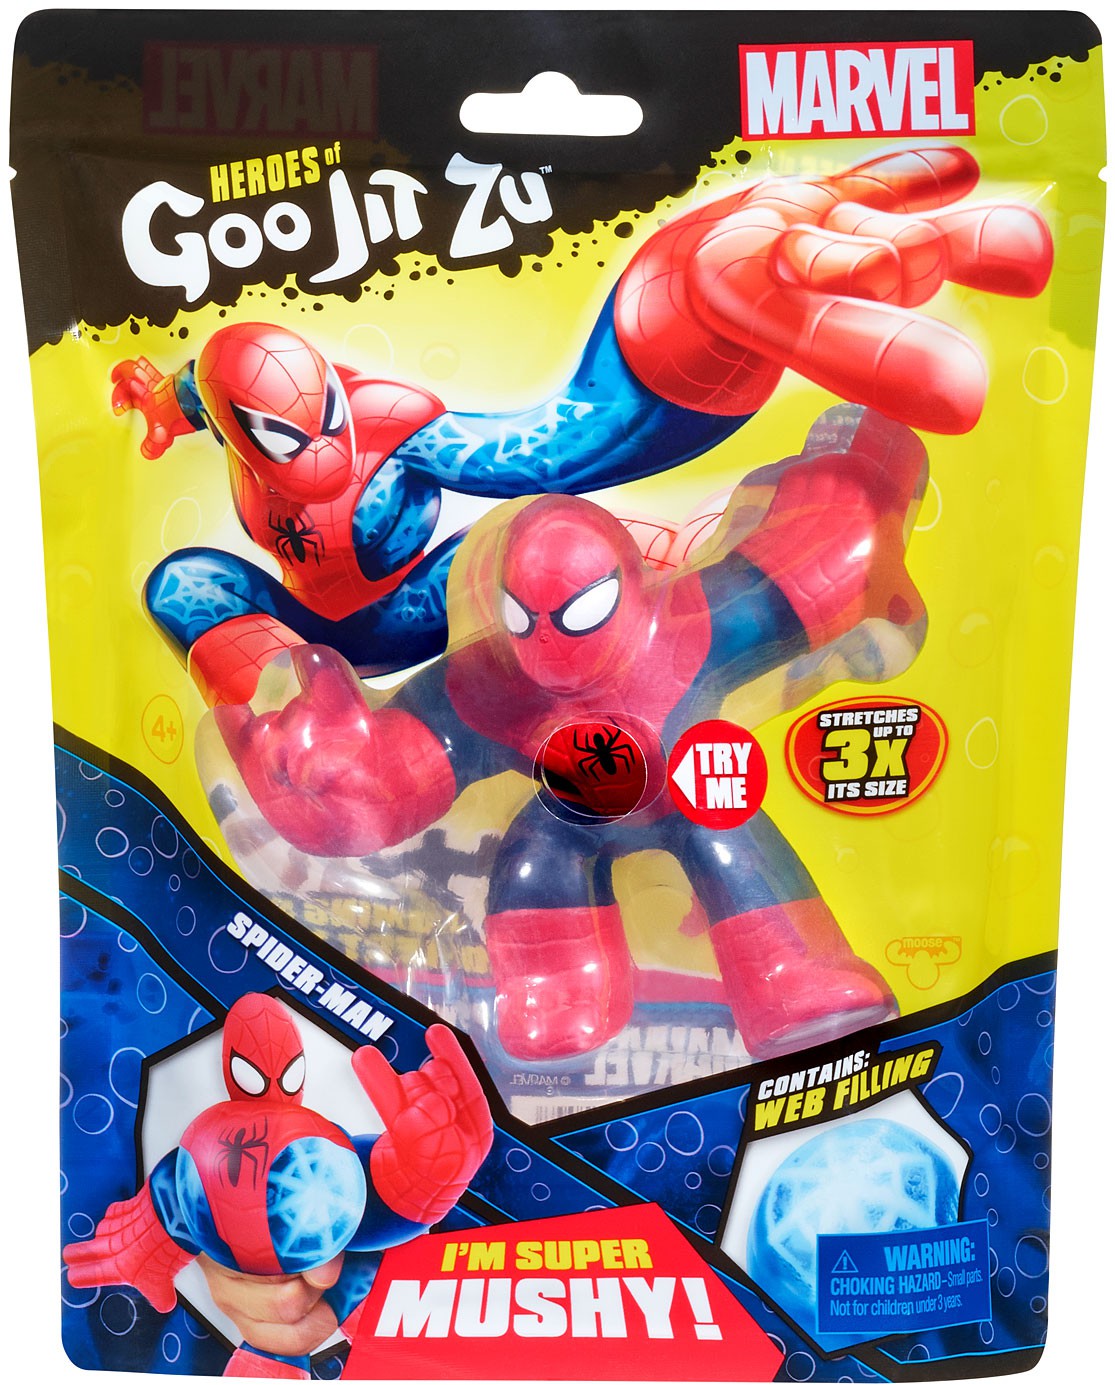 Heroes of Goo Jit Zu Marvel SpiderMan Action Figure eBay